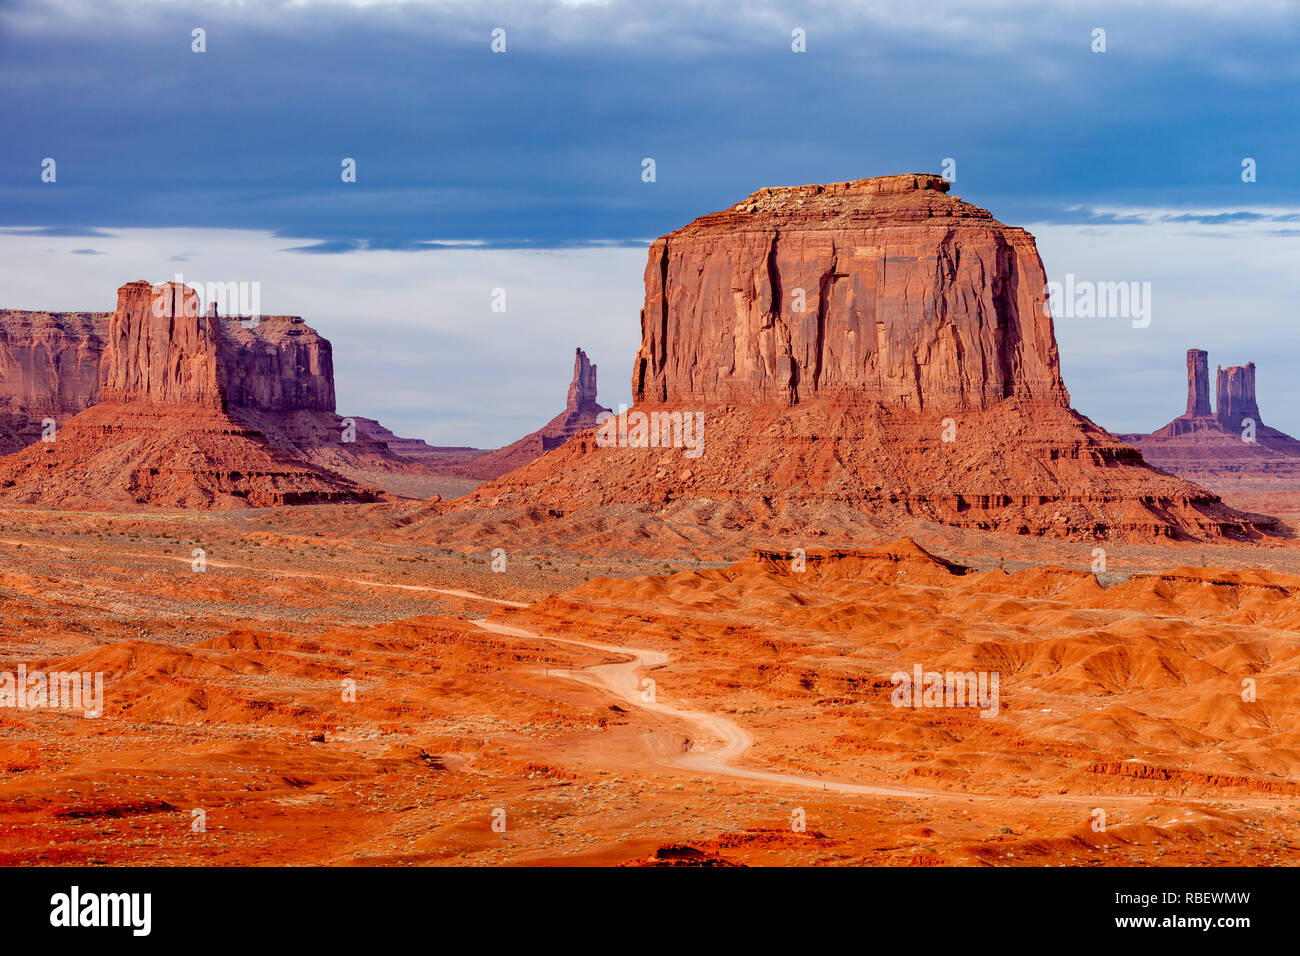 Merrick Butte e le formazioni rocciose della Monument Valley Navajo Tribal Park, Arizona, Stati Uniti d'America Foto Stock